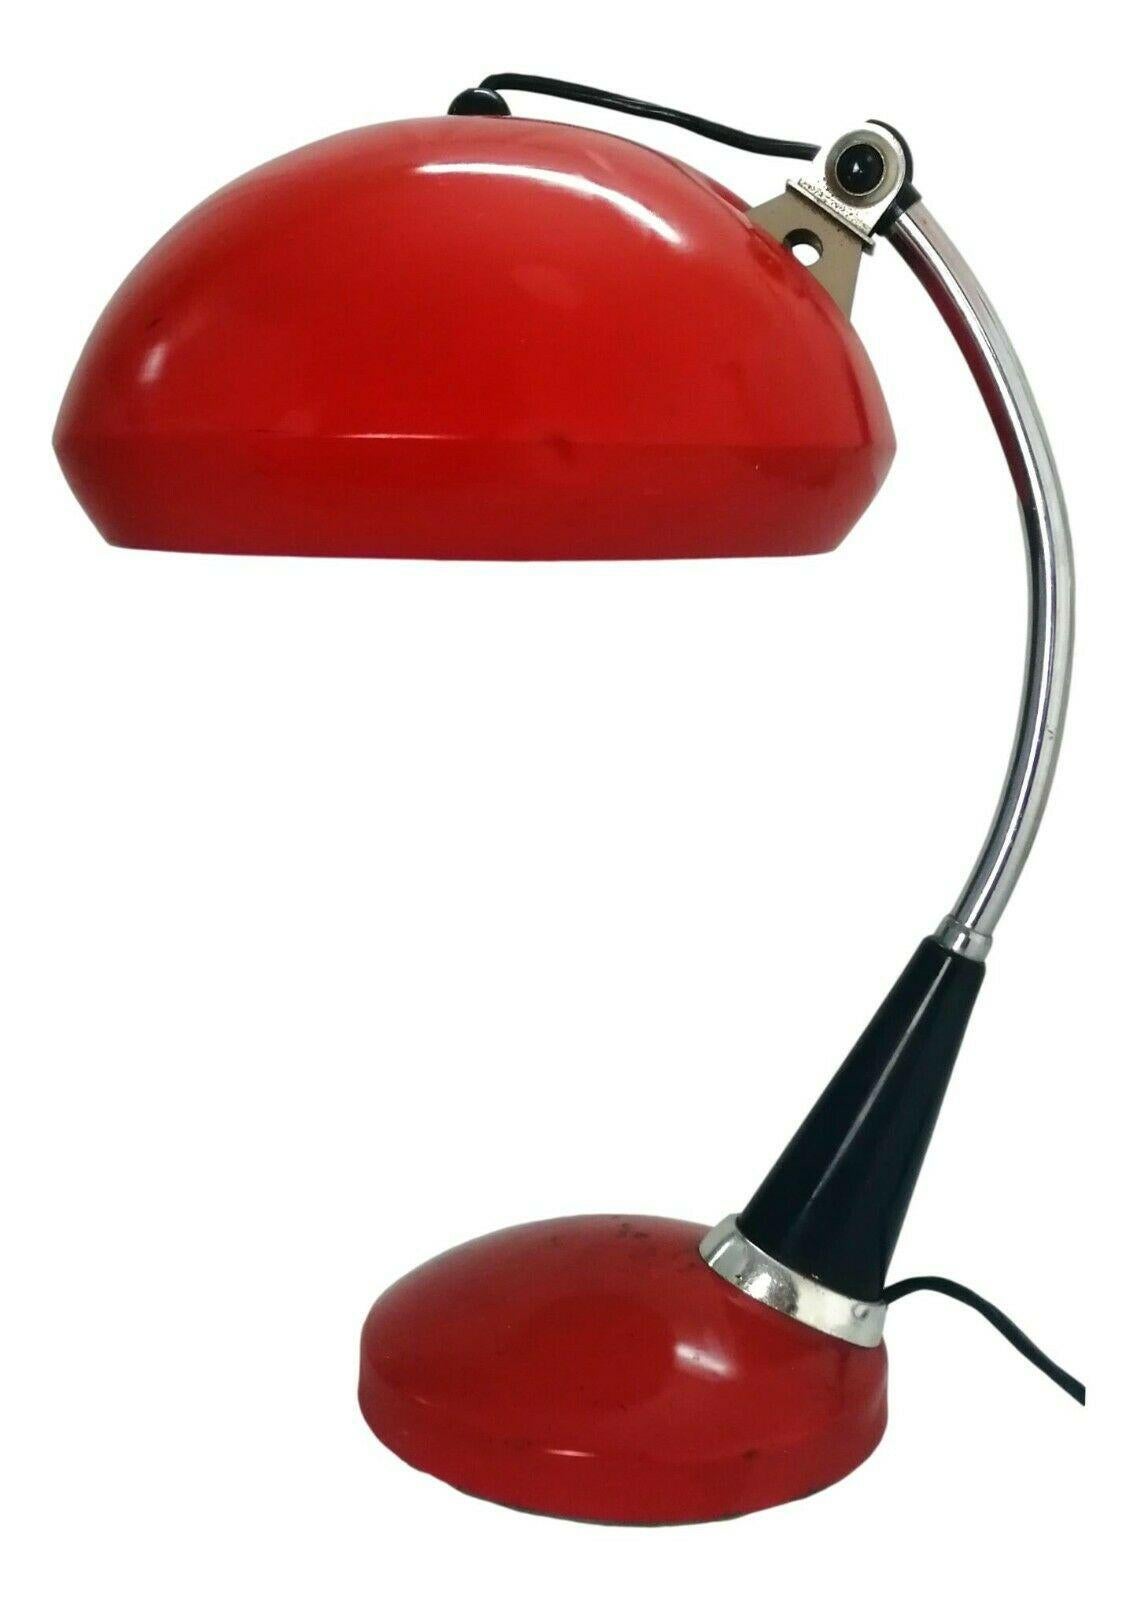 Lampe de table de conception originale des années 1960, de production inconnue, probablement conçue par Christian Dell, réalisée sur une structure métallique avec des interventions en acier, diffuseur avec joint

Mesure 40 cm de hauteur, diamètre